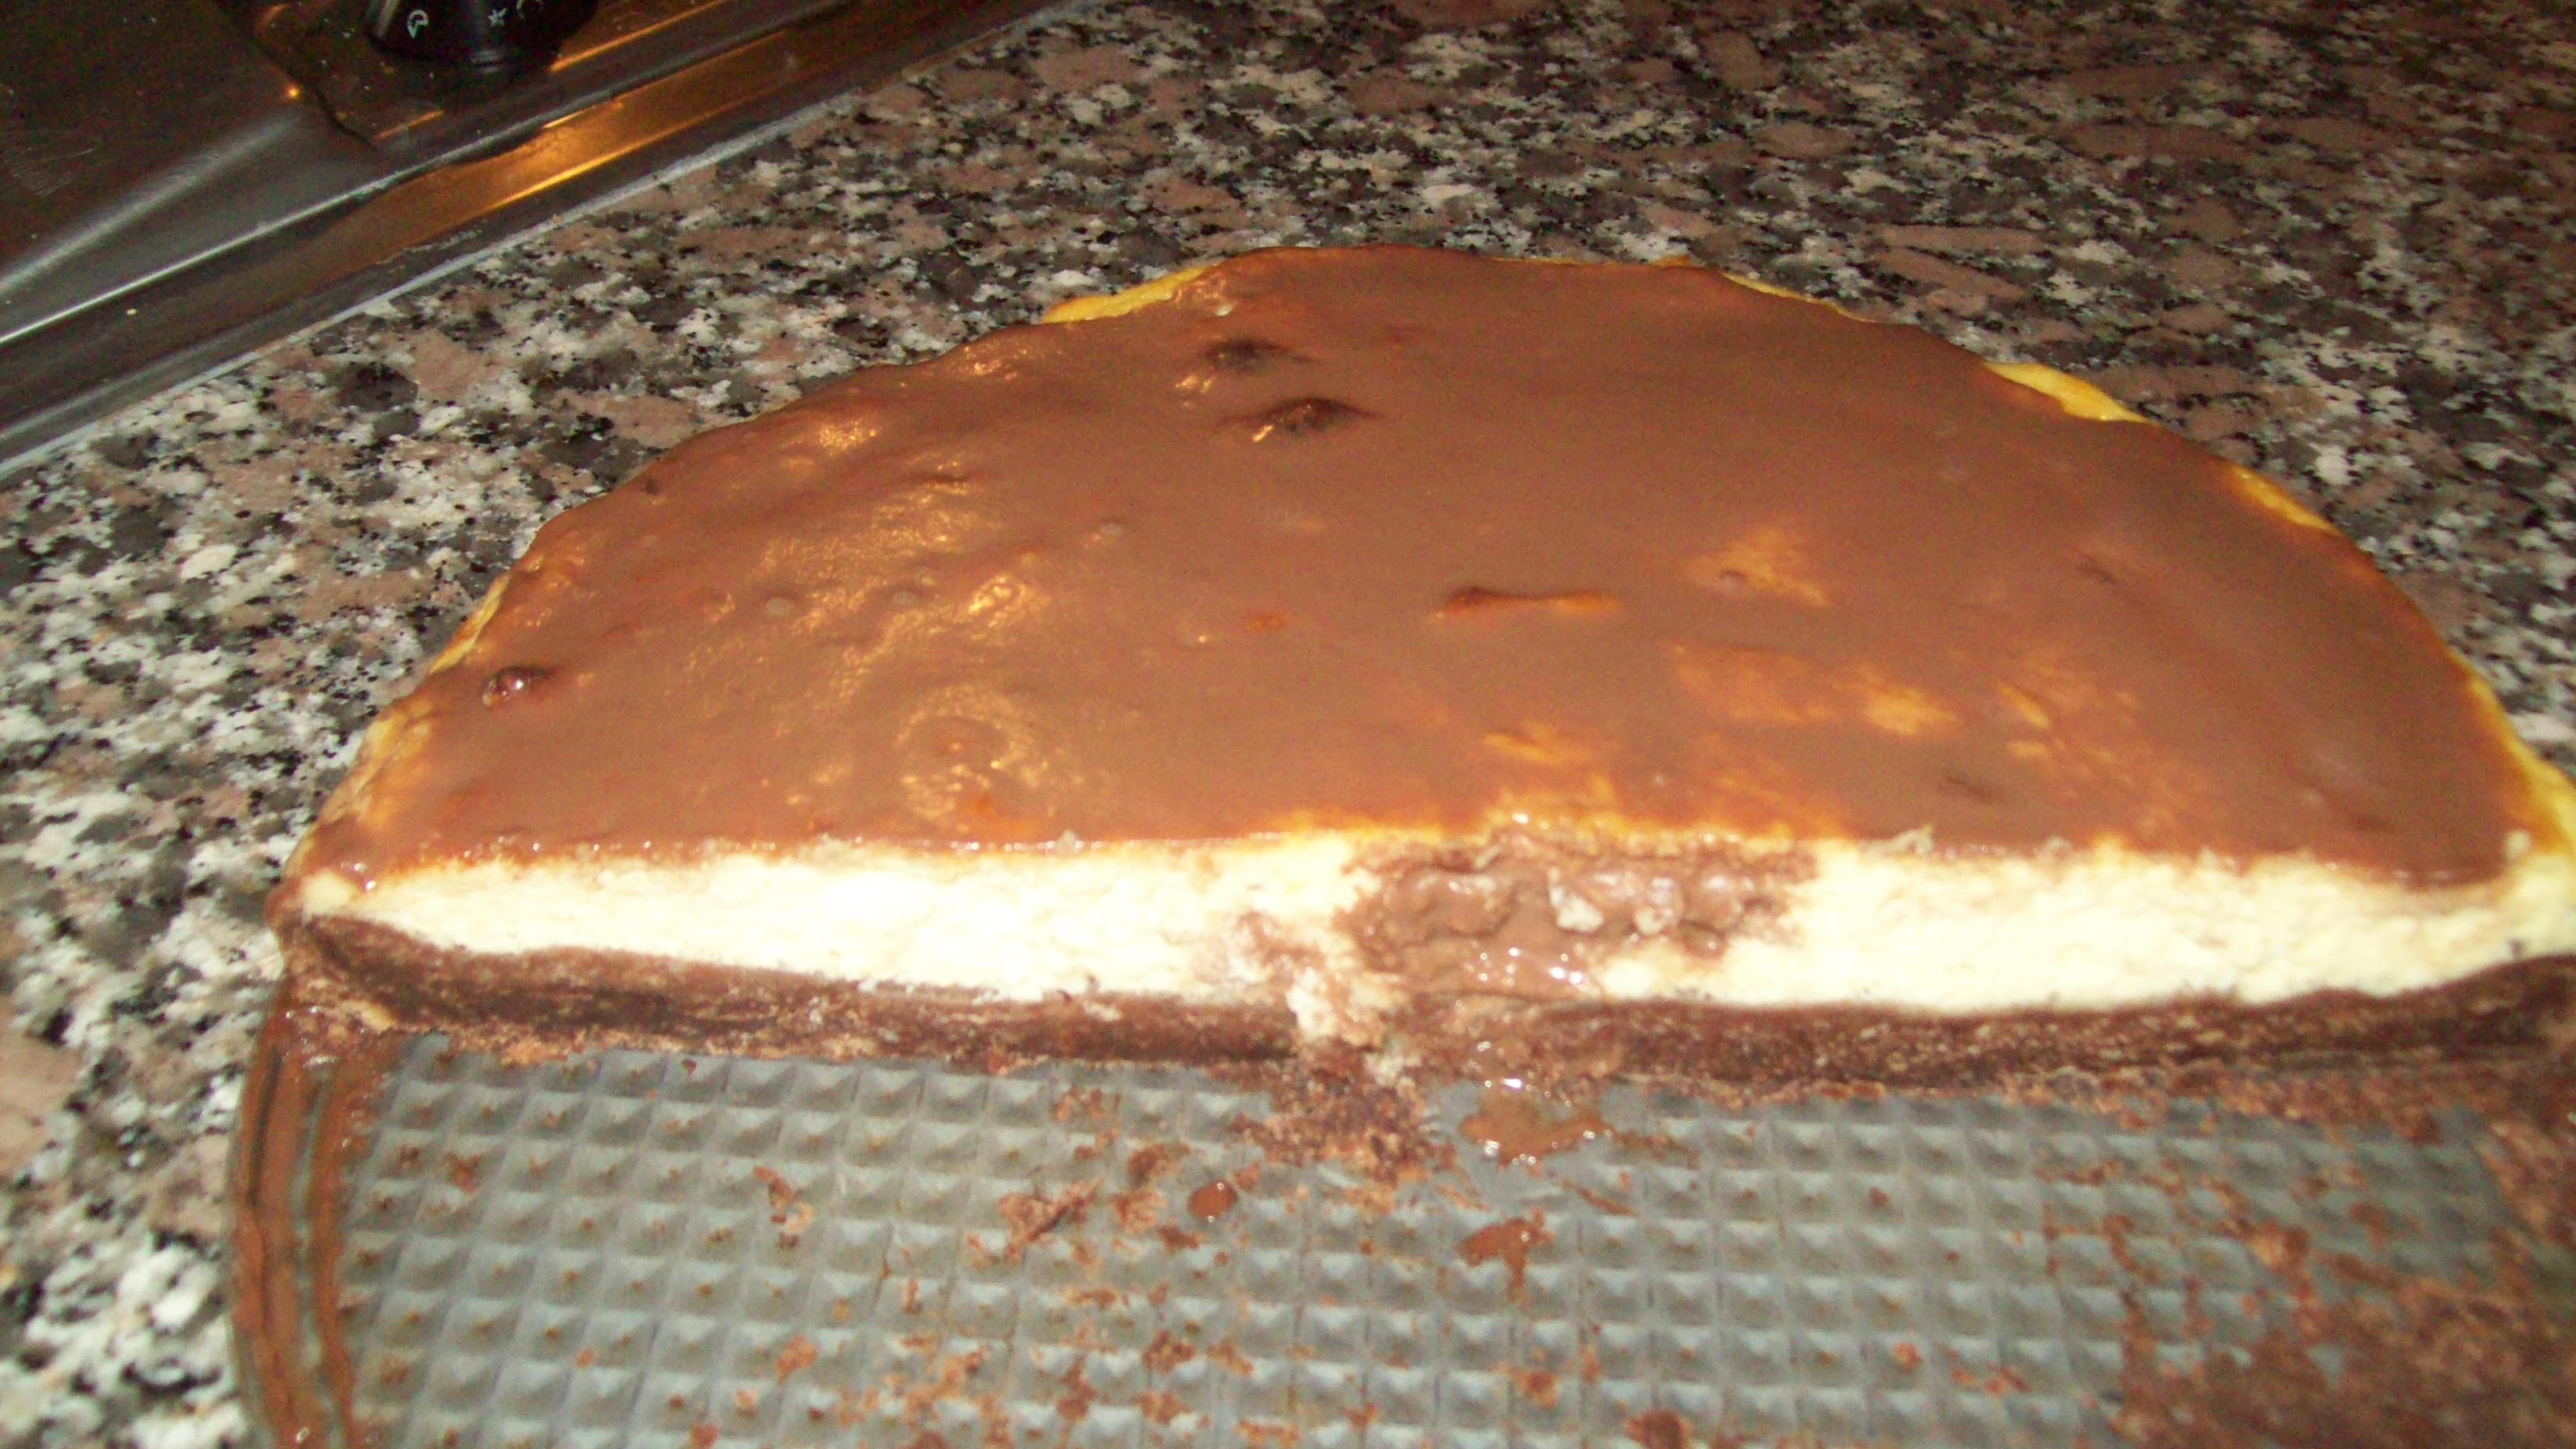 Cheesecake cu ricotta si ciocolata